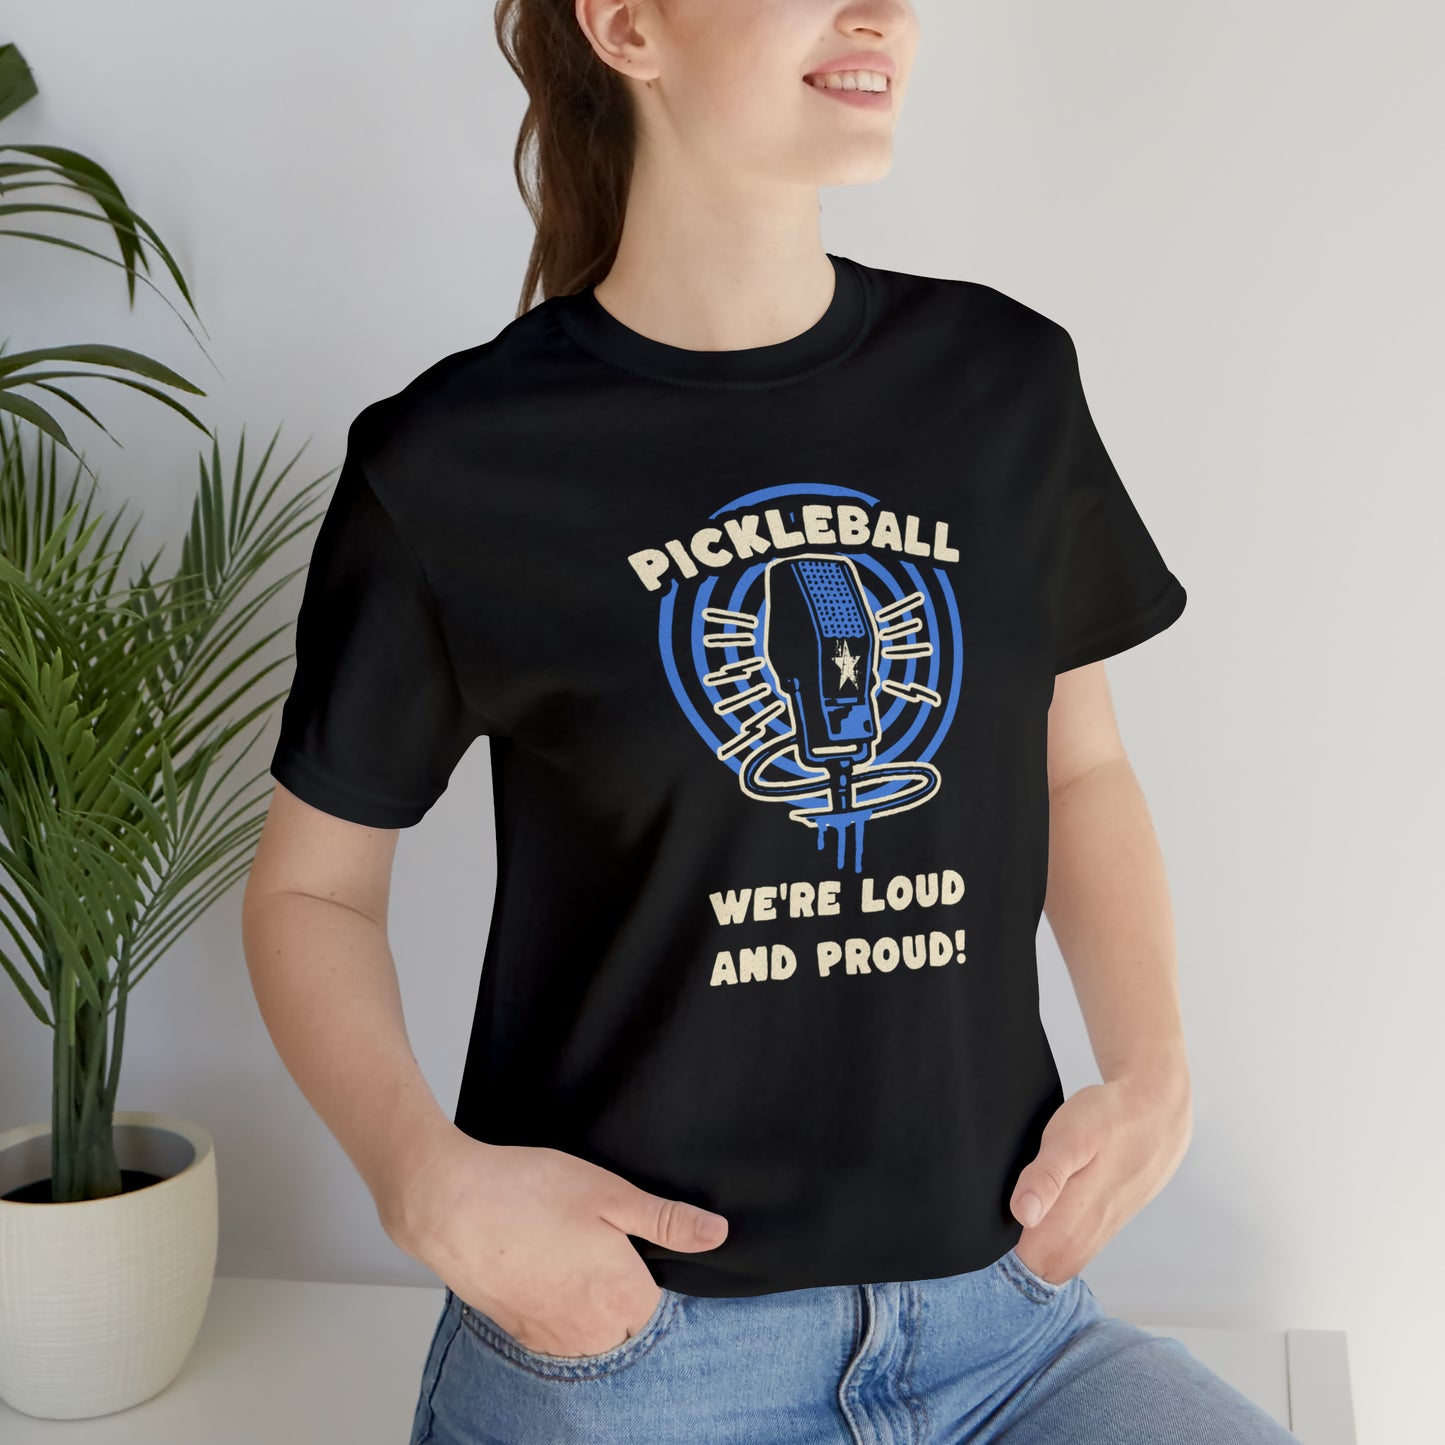 Pickleball Pride: 'Loud and Proud' T-Shirt